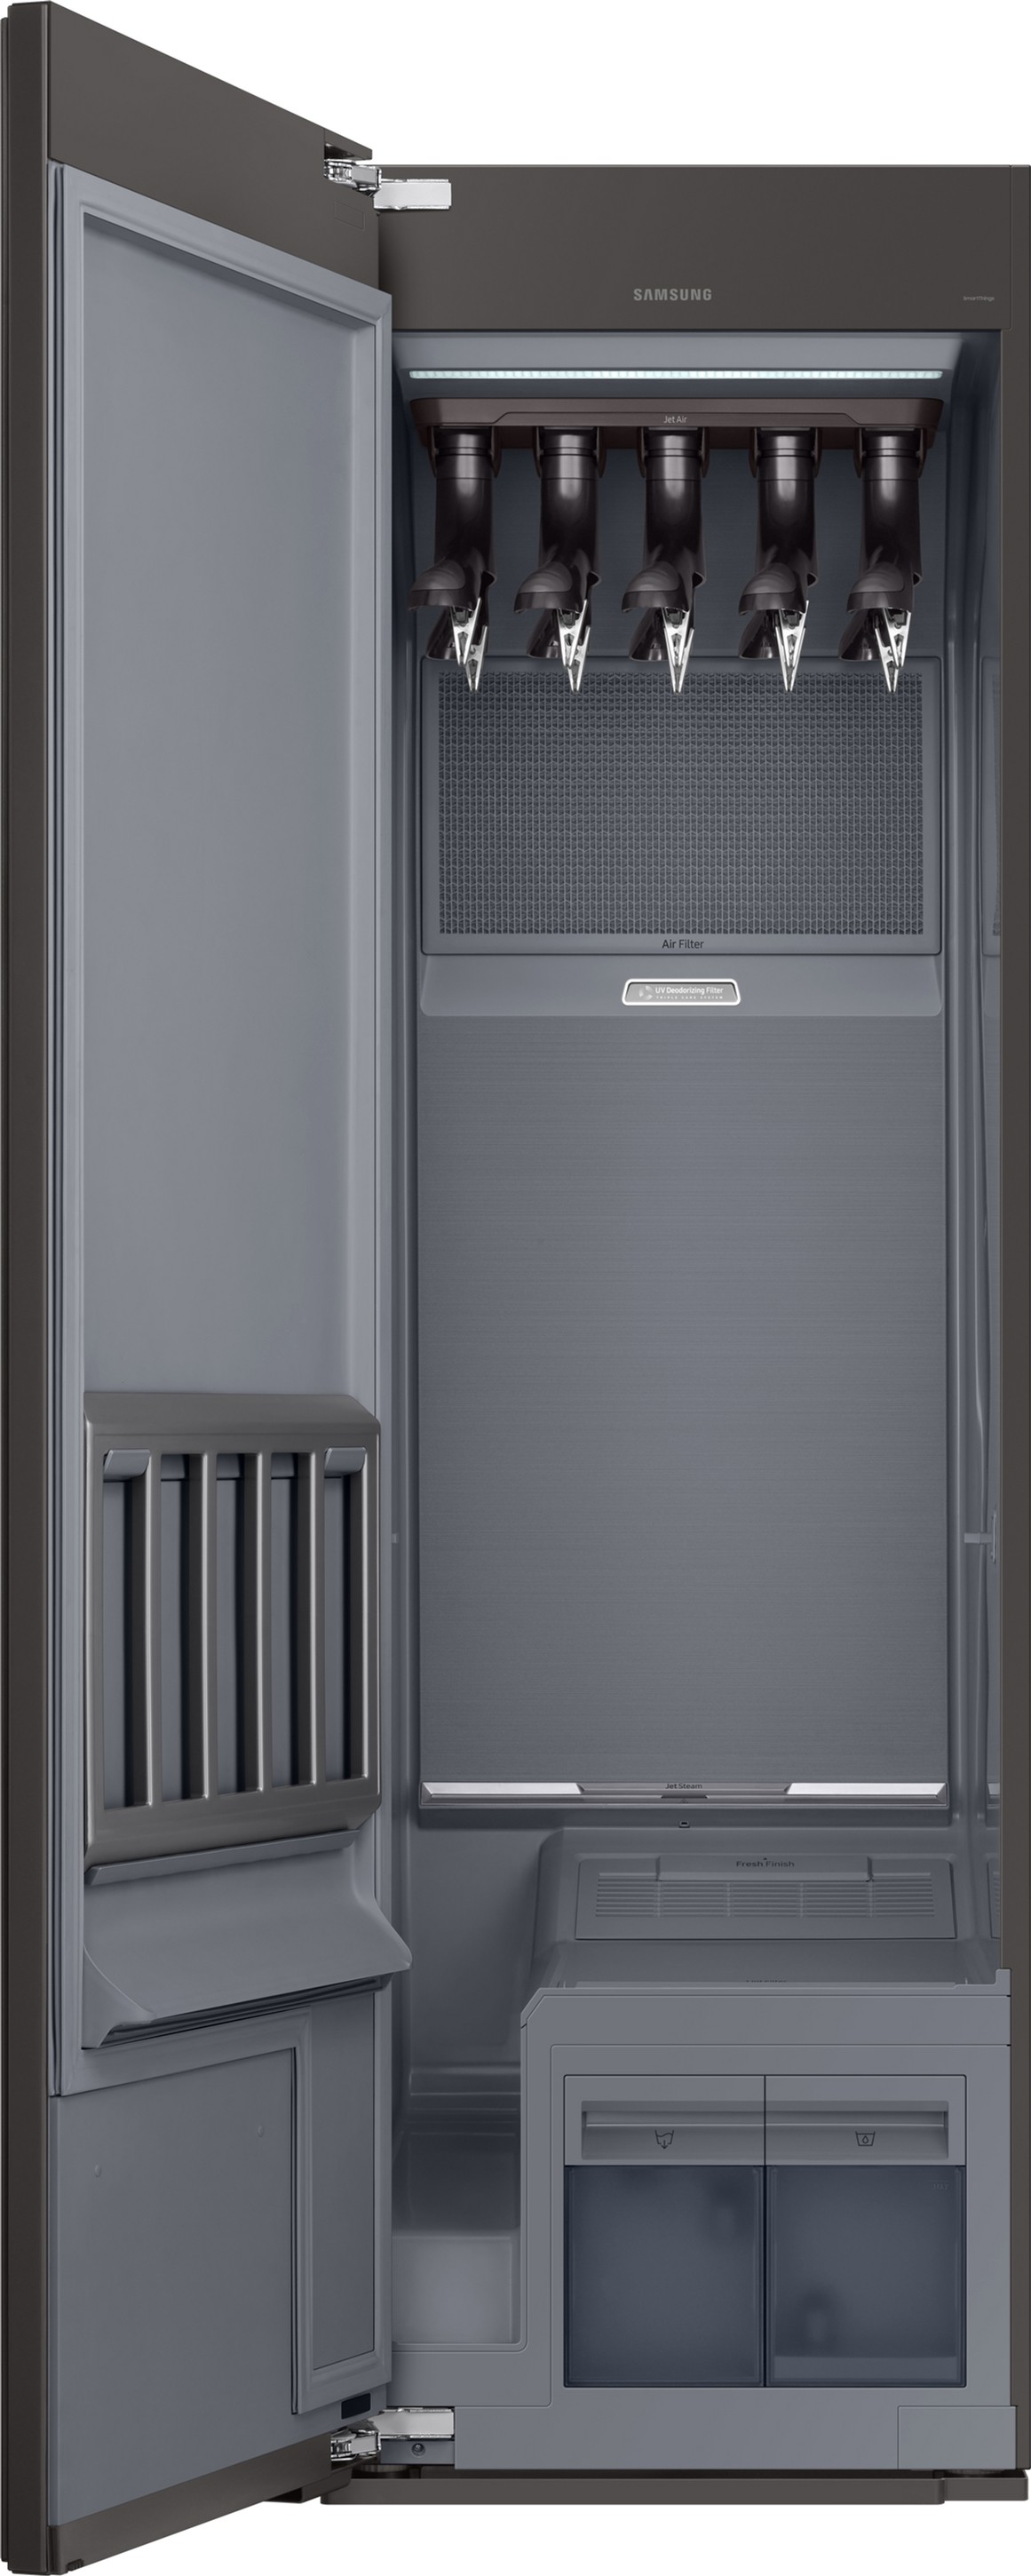 Паровой шкаф для ухода за одеждой Samsung DF10A9500CG/LP отзывы - изображения 5